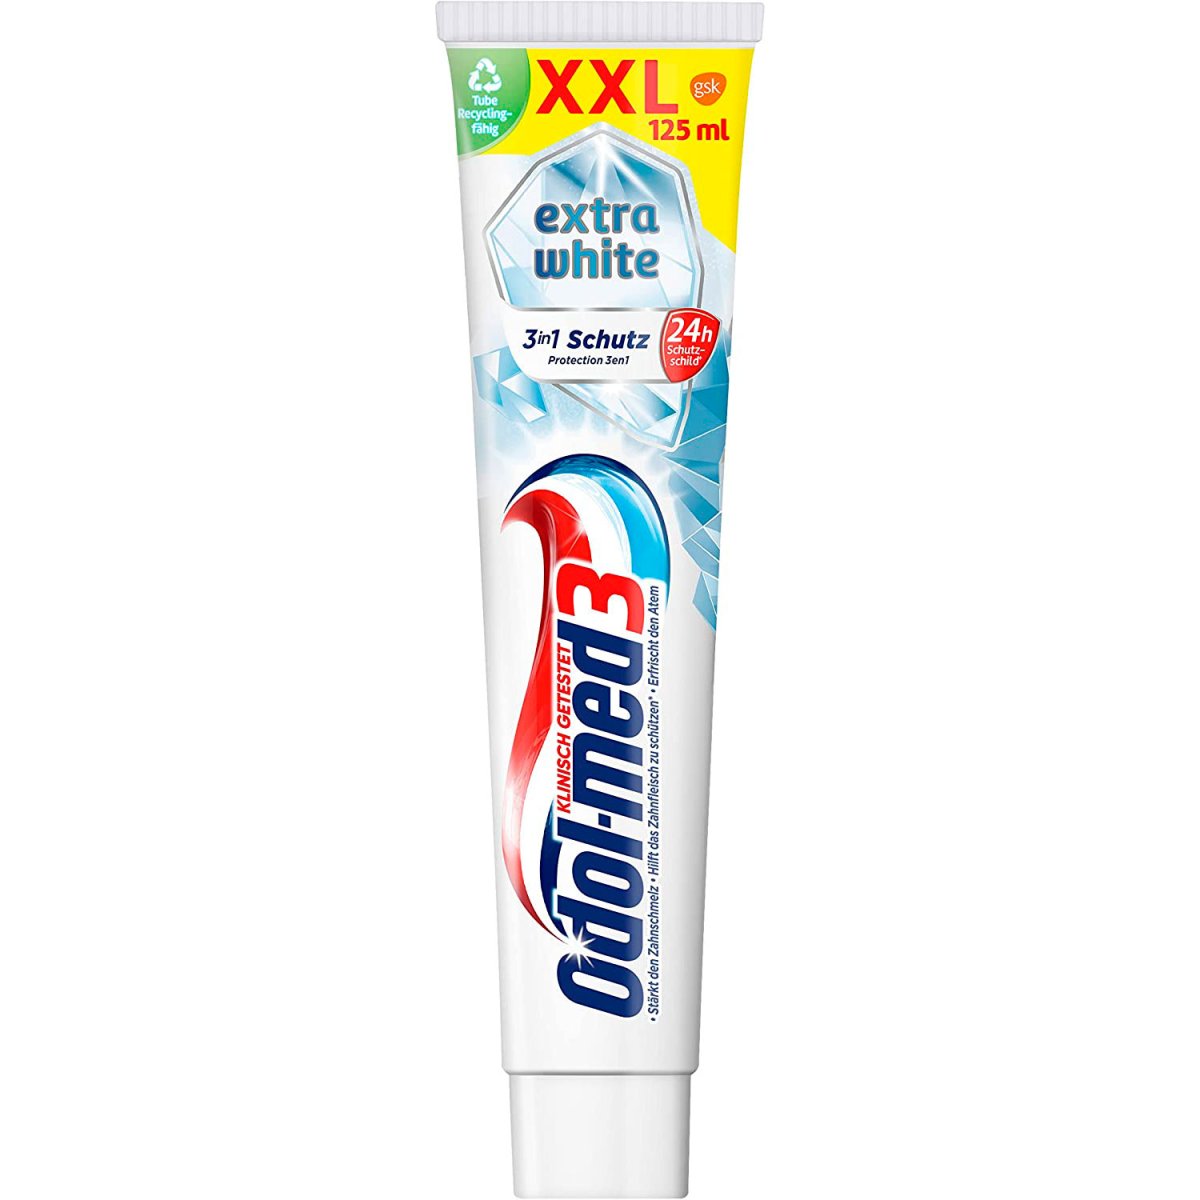 væv reservedele Monet Aquafresh Extra White Tandpasta ⇒ Se tandblegning på Mundfrisk.dk